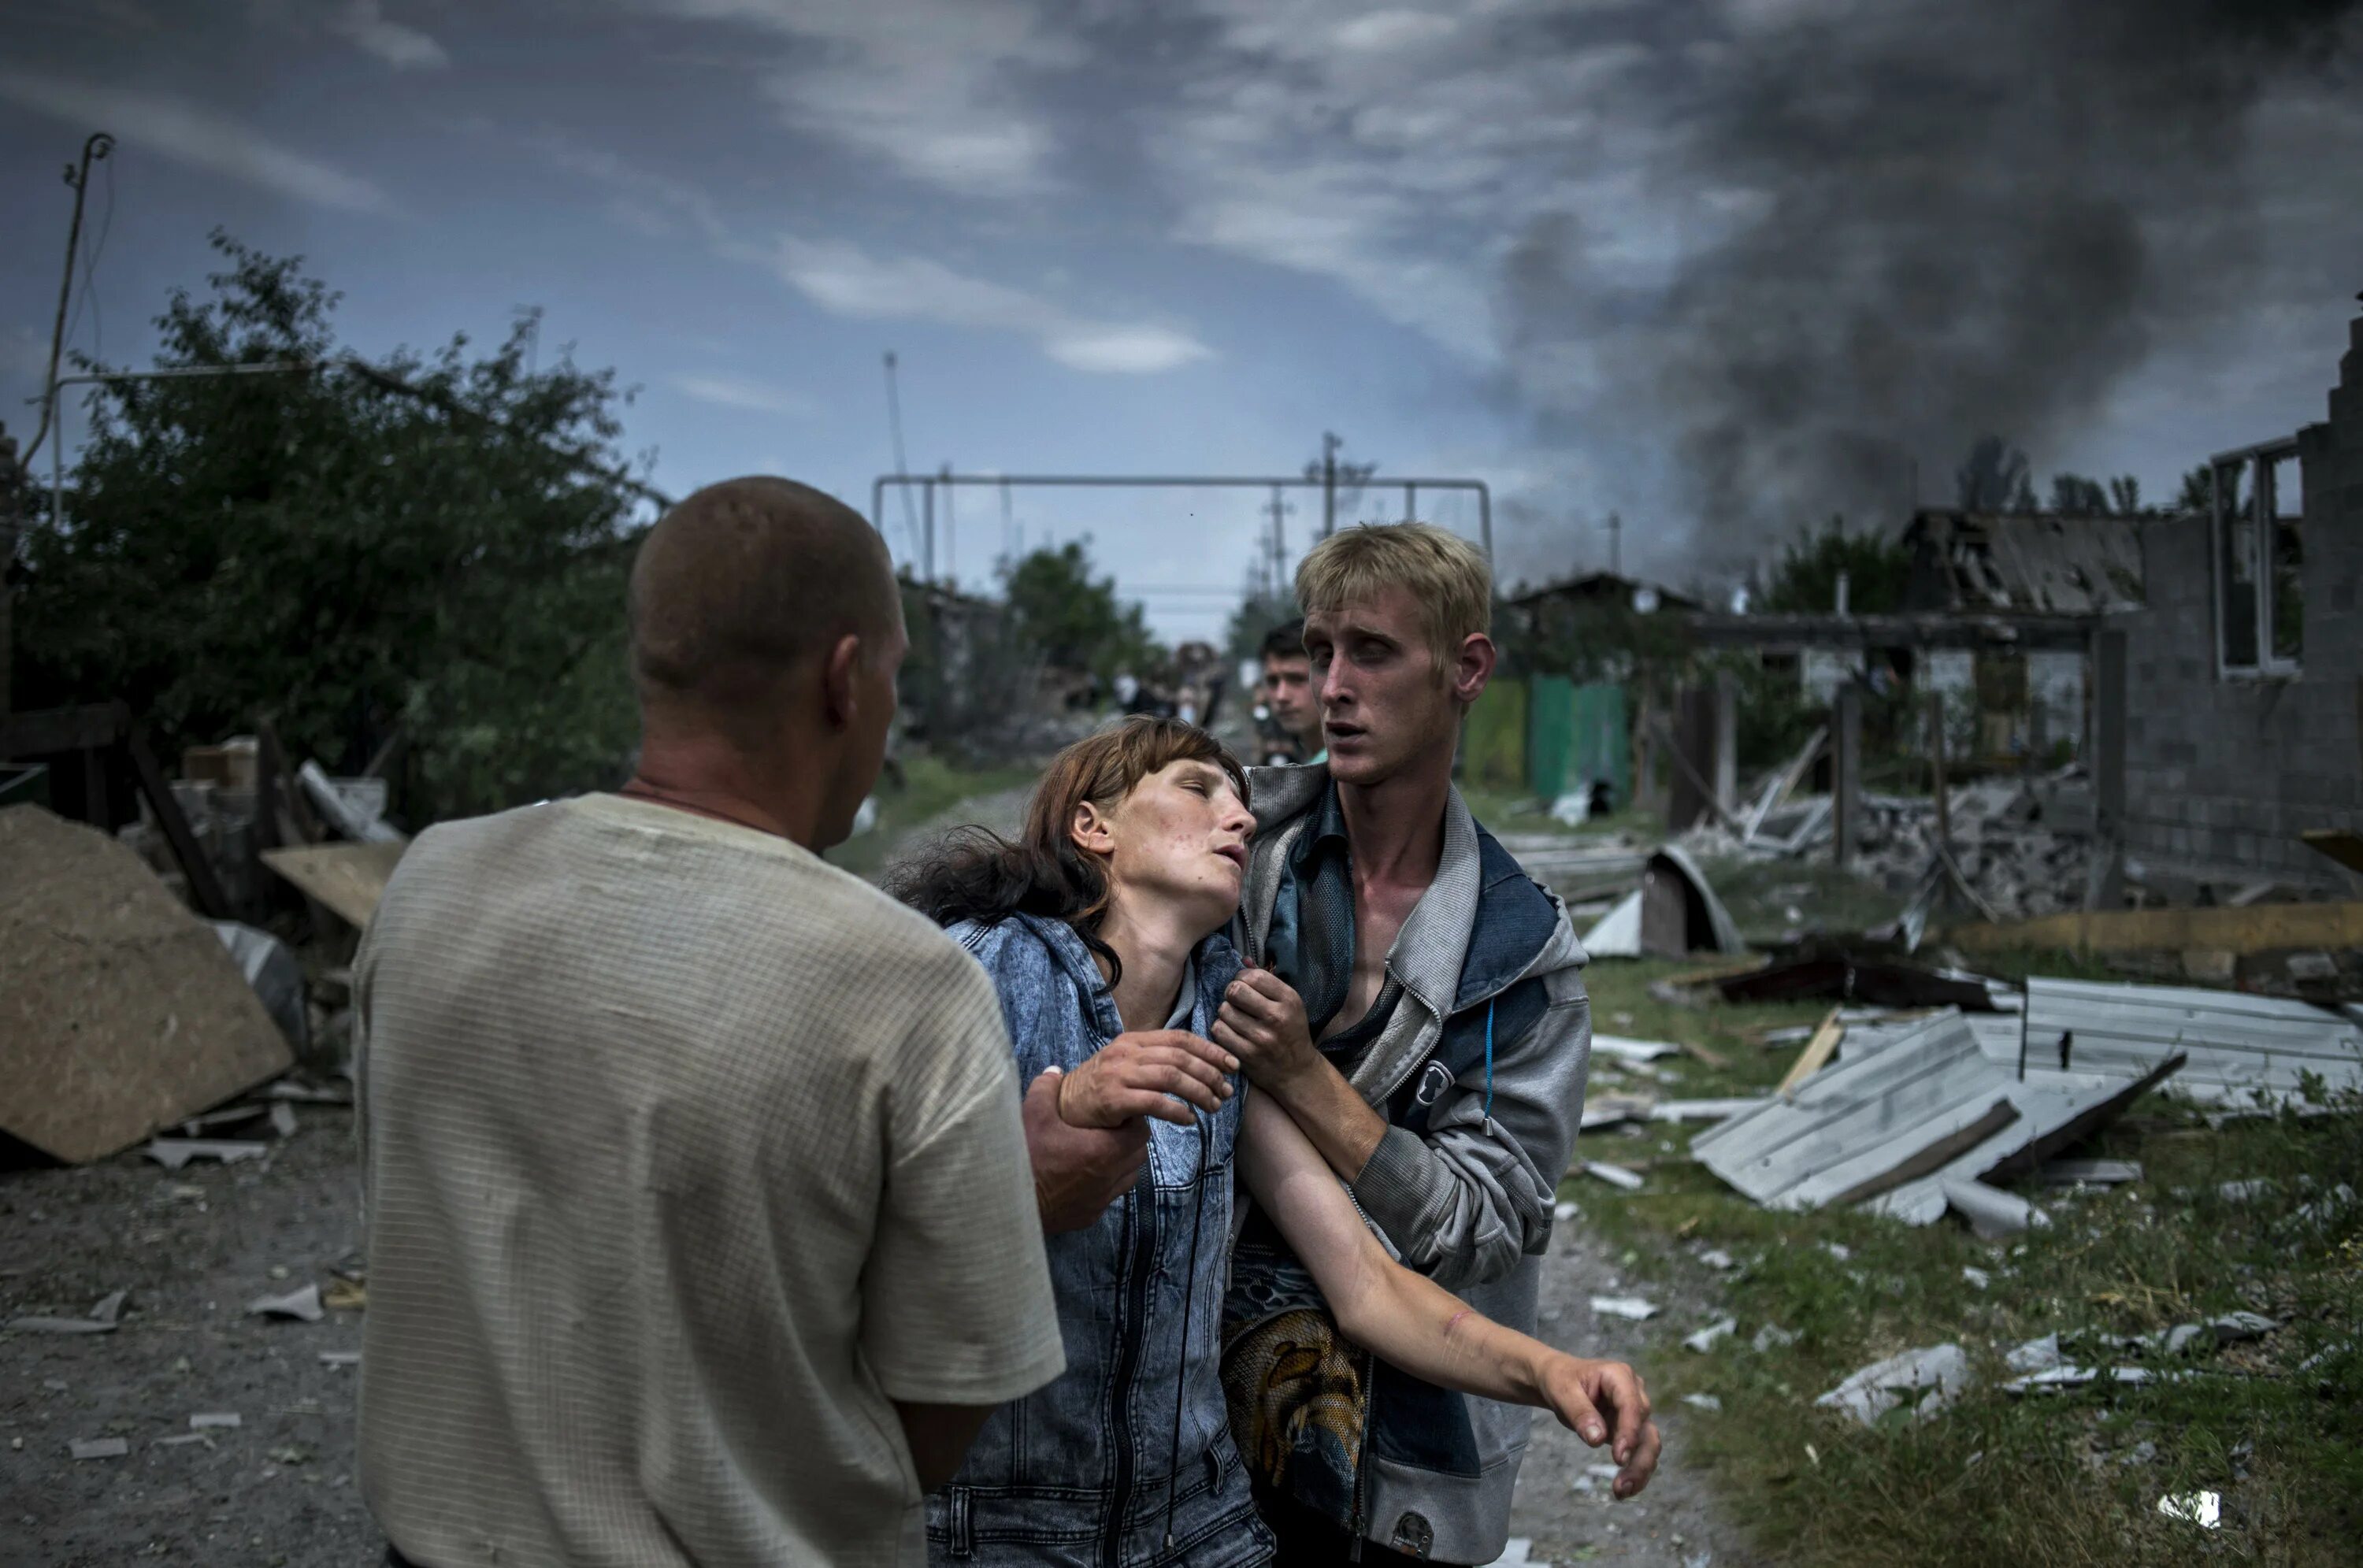 Украина страдает. Станица Луганская 2 июля 2014. Удар по станице Луганской 2 июля 2014.